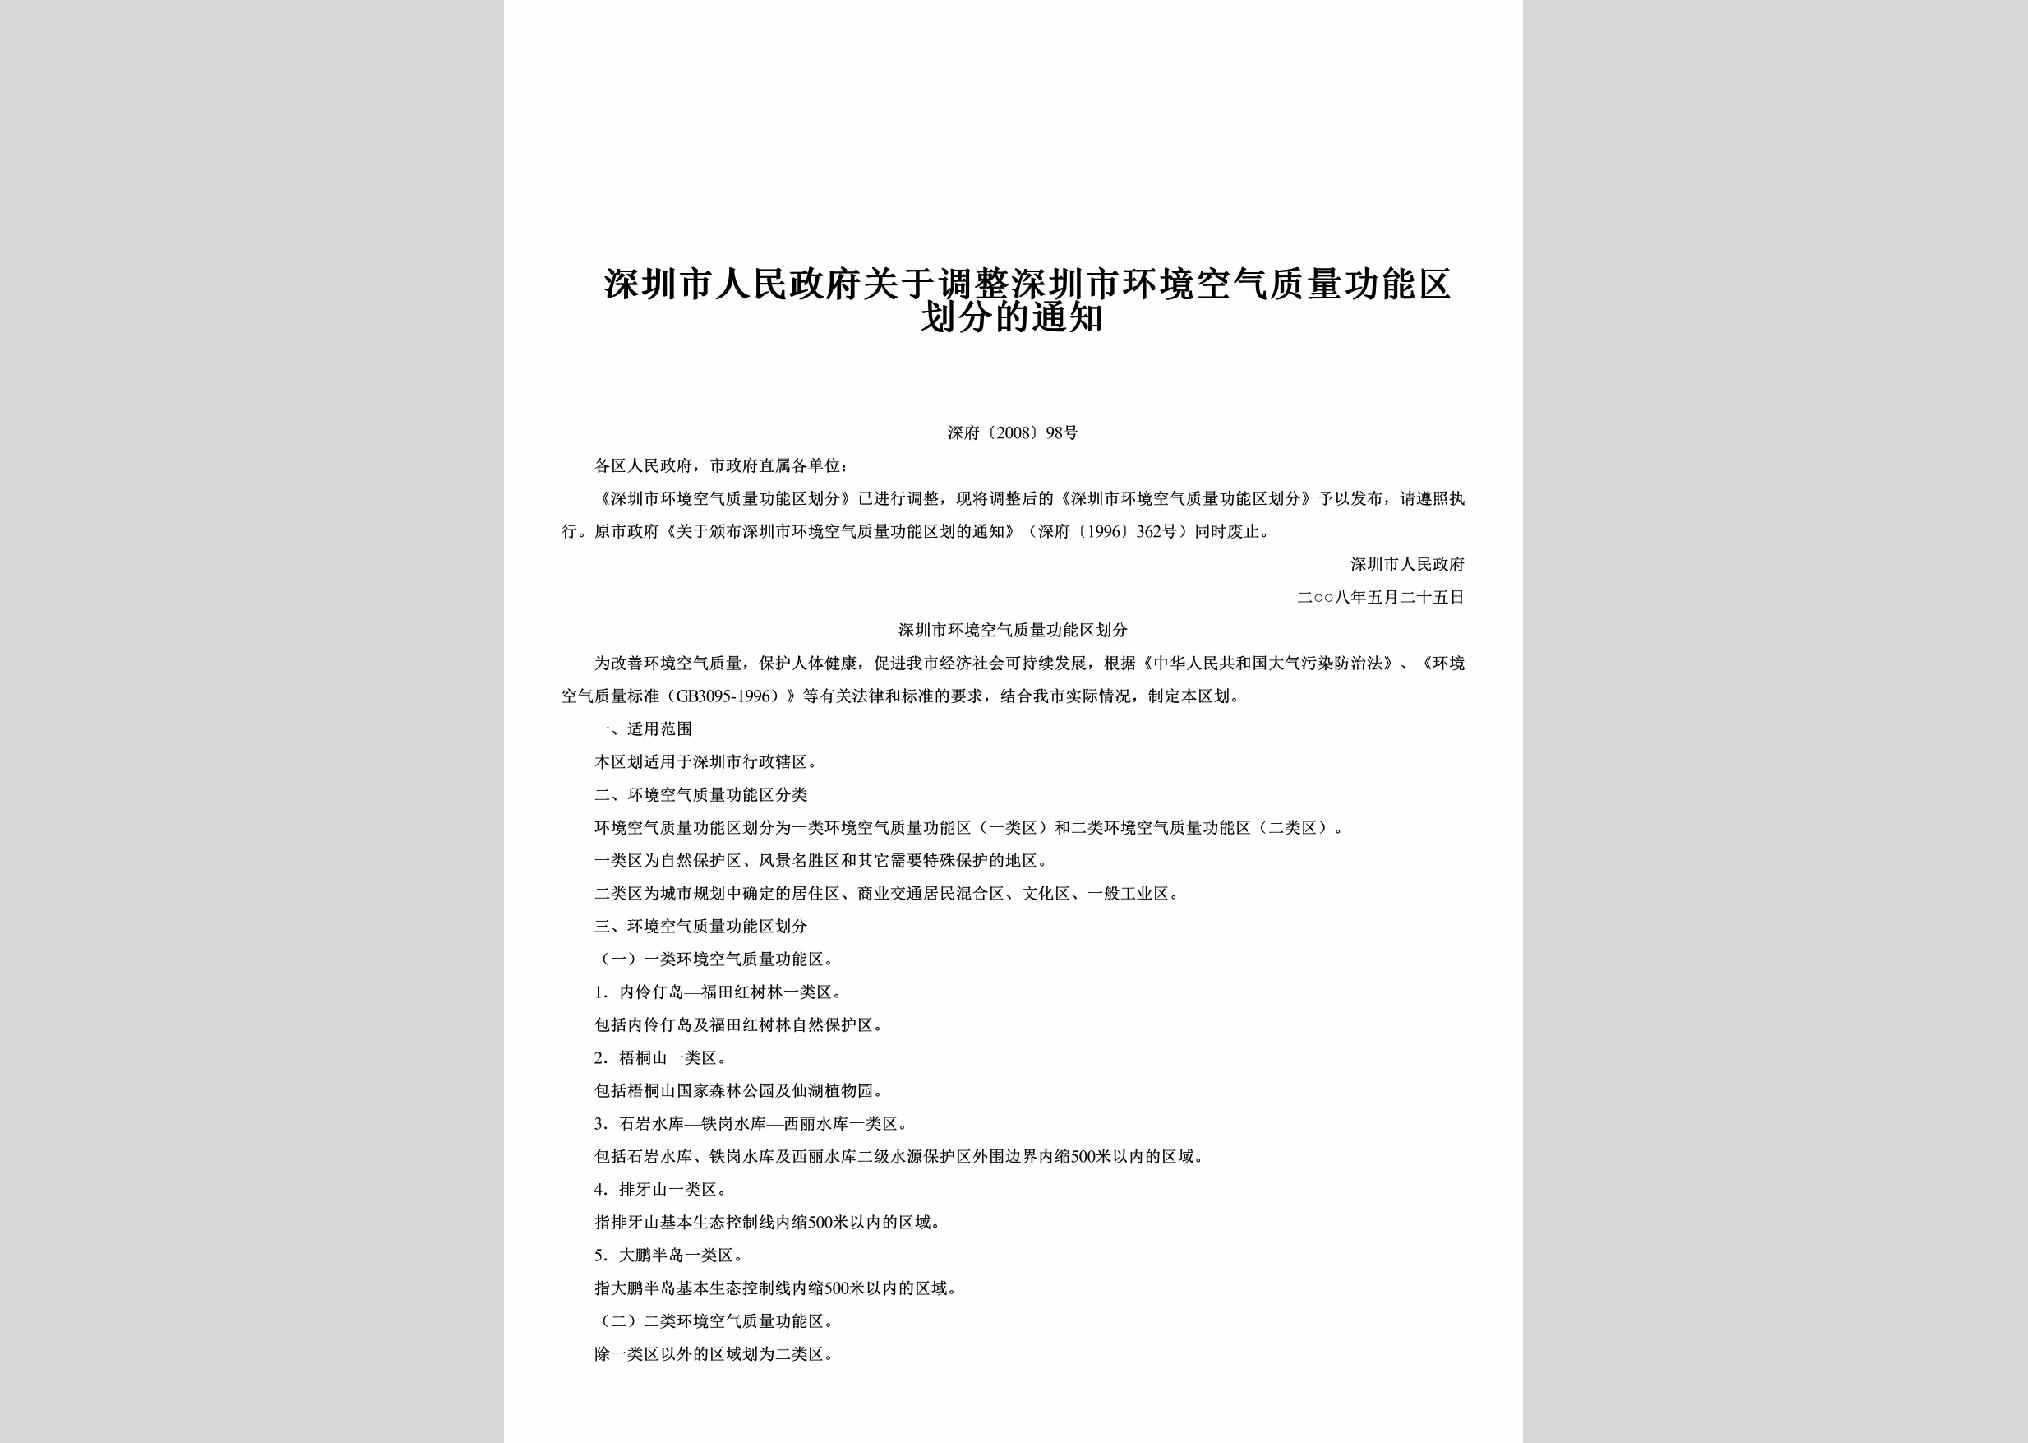 深府[2008]98号：关于调整深圳市环境空气质量功能区划分的通知